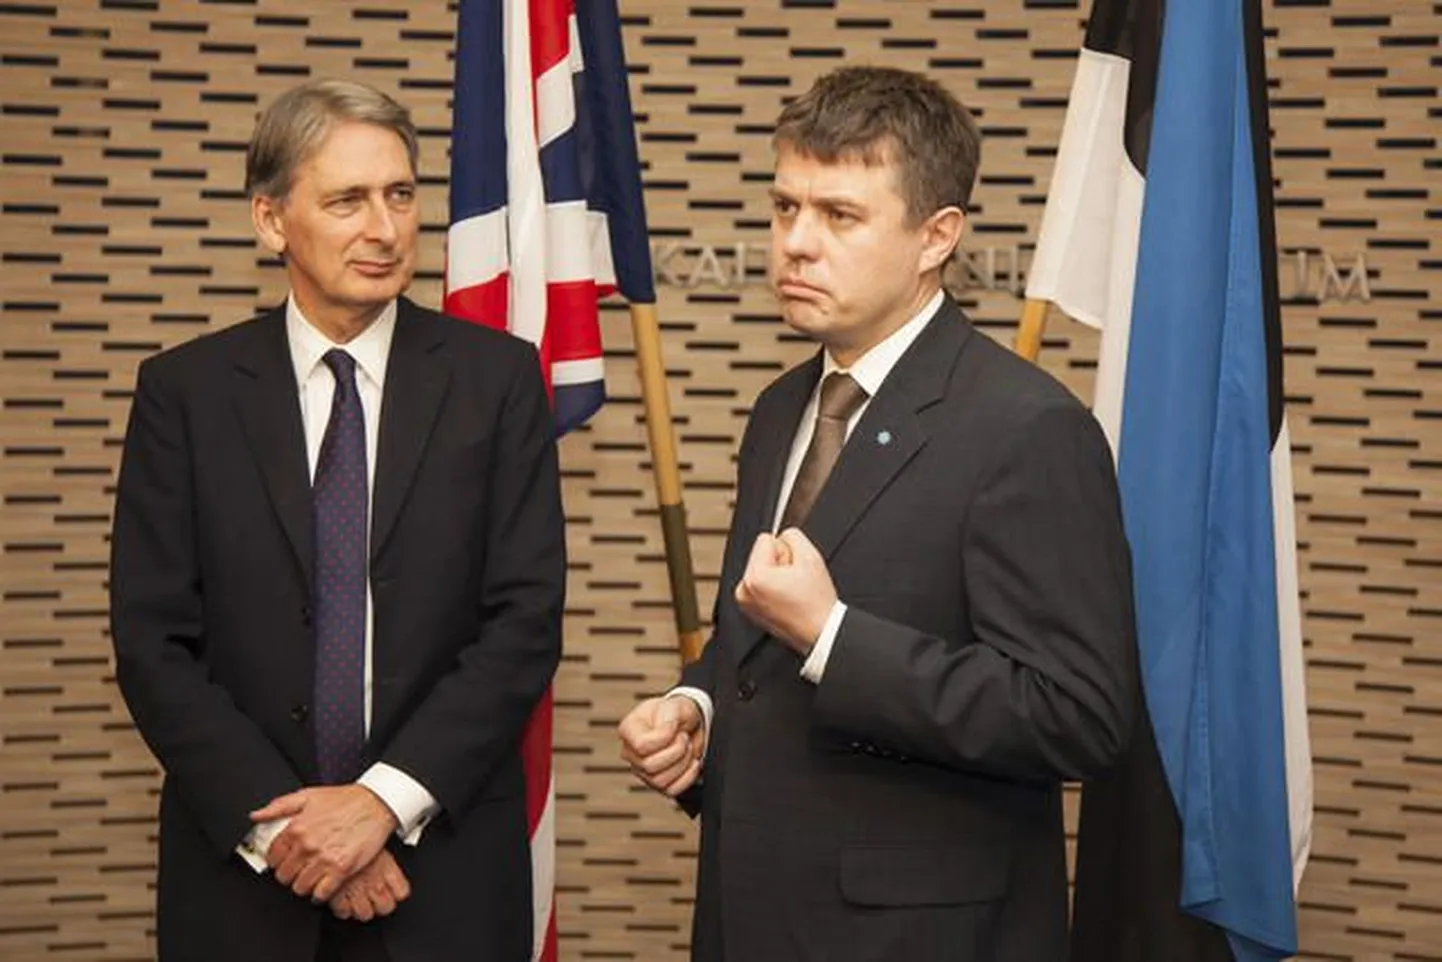 Ühendkuningriigi kaitseminister Philip Hammond ja kaitseminister Urmas Reinsalu